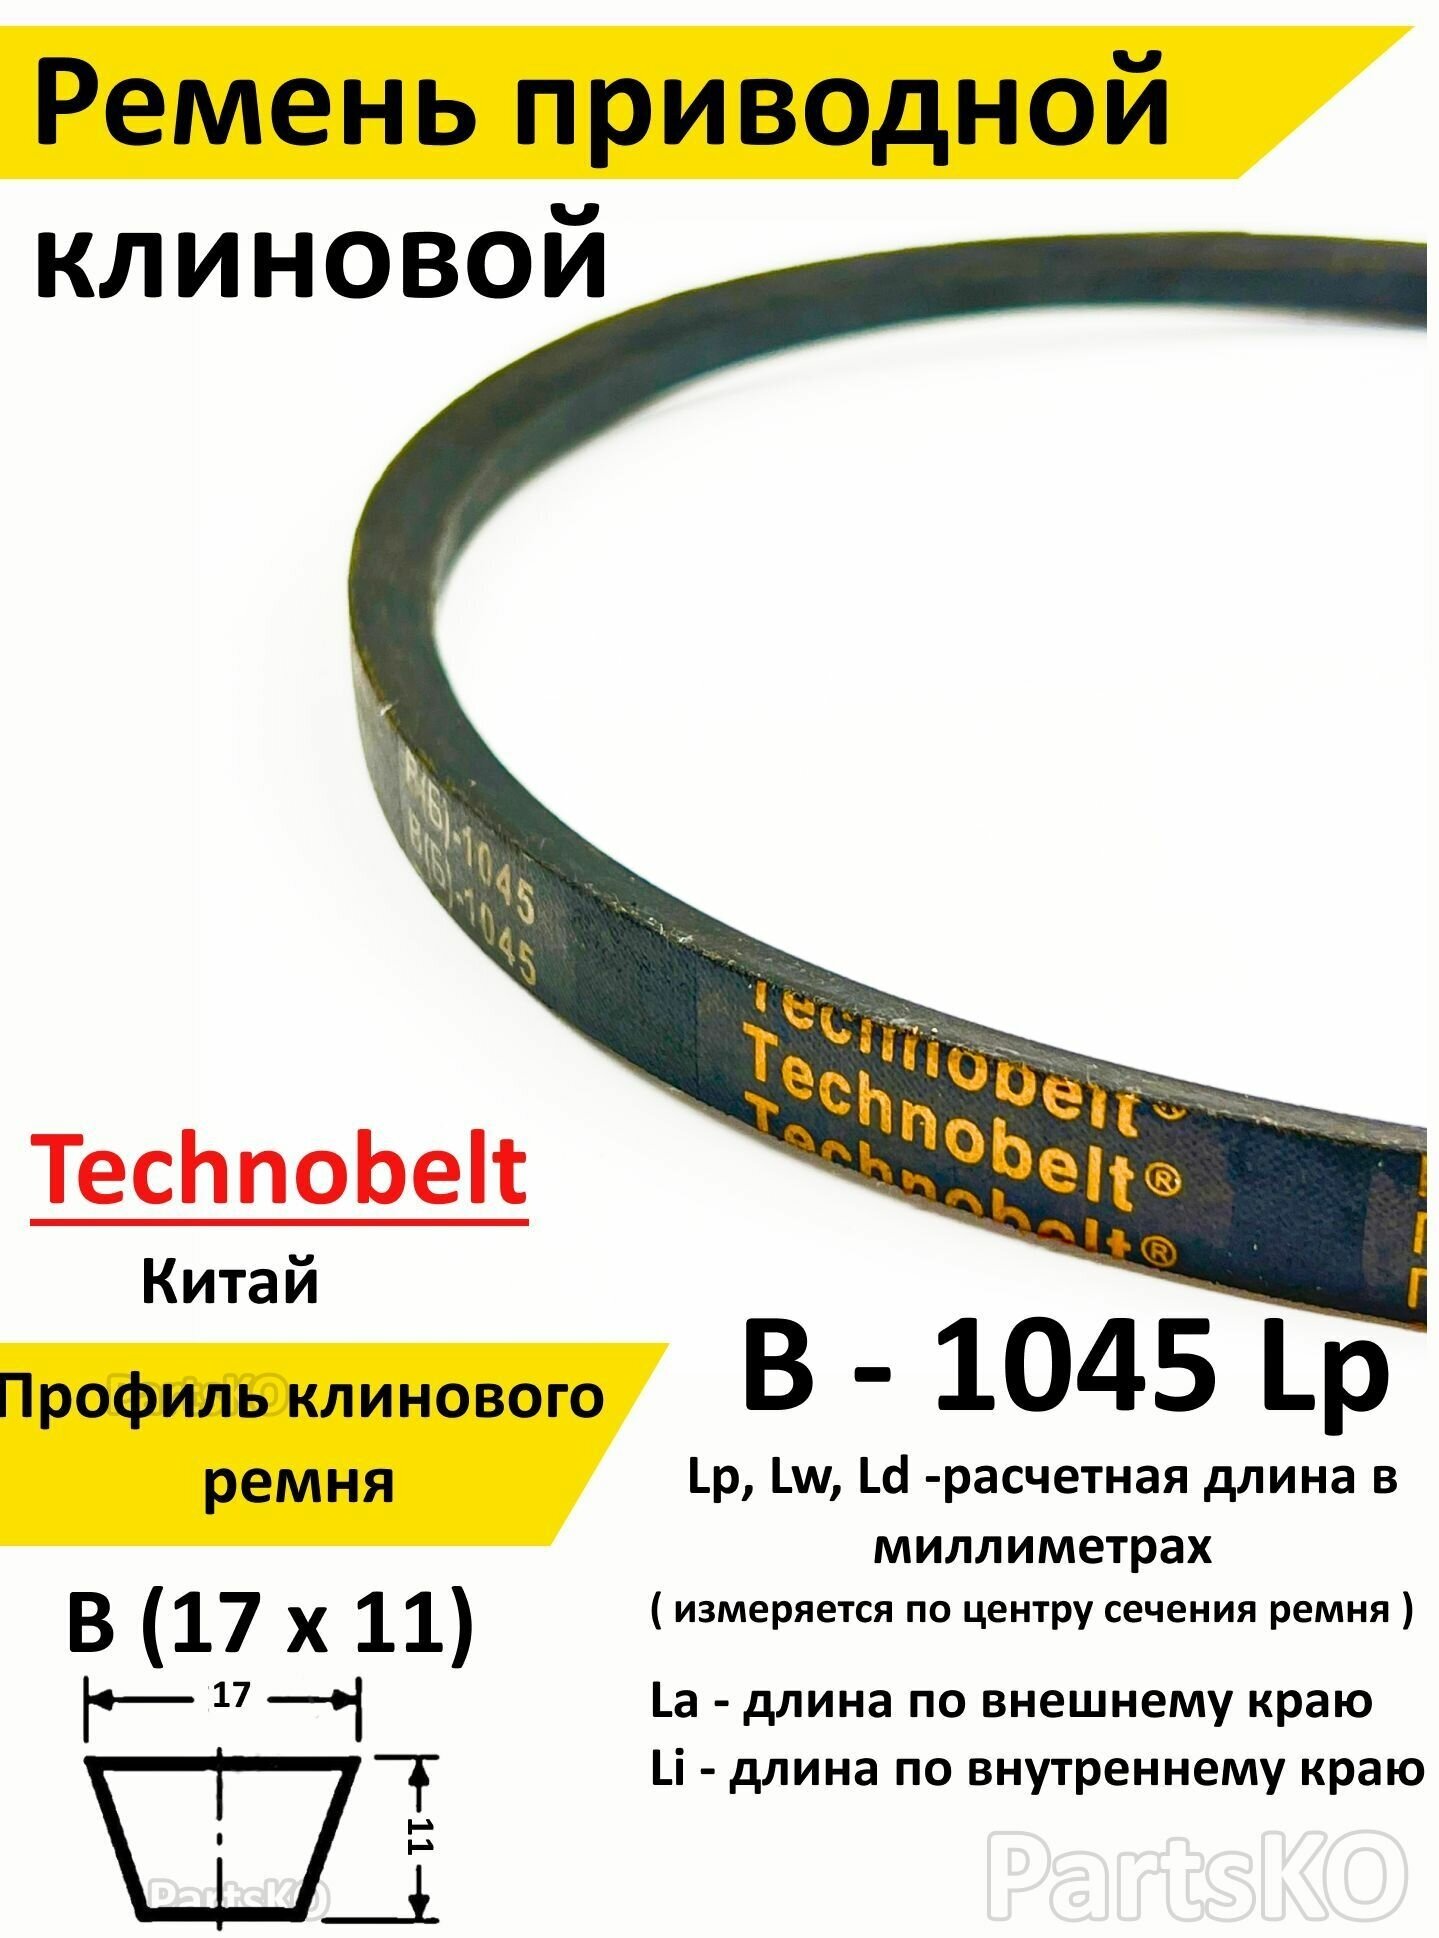 Ремень приводной В 1045 LP клиновой Technobelt В(Б)1045 / Клиновидный. Для привода шнека, снегоуборщика, мотоблока, культиватора, мотокультиватора, станка, подъемника. Не зубчатый